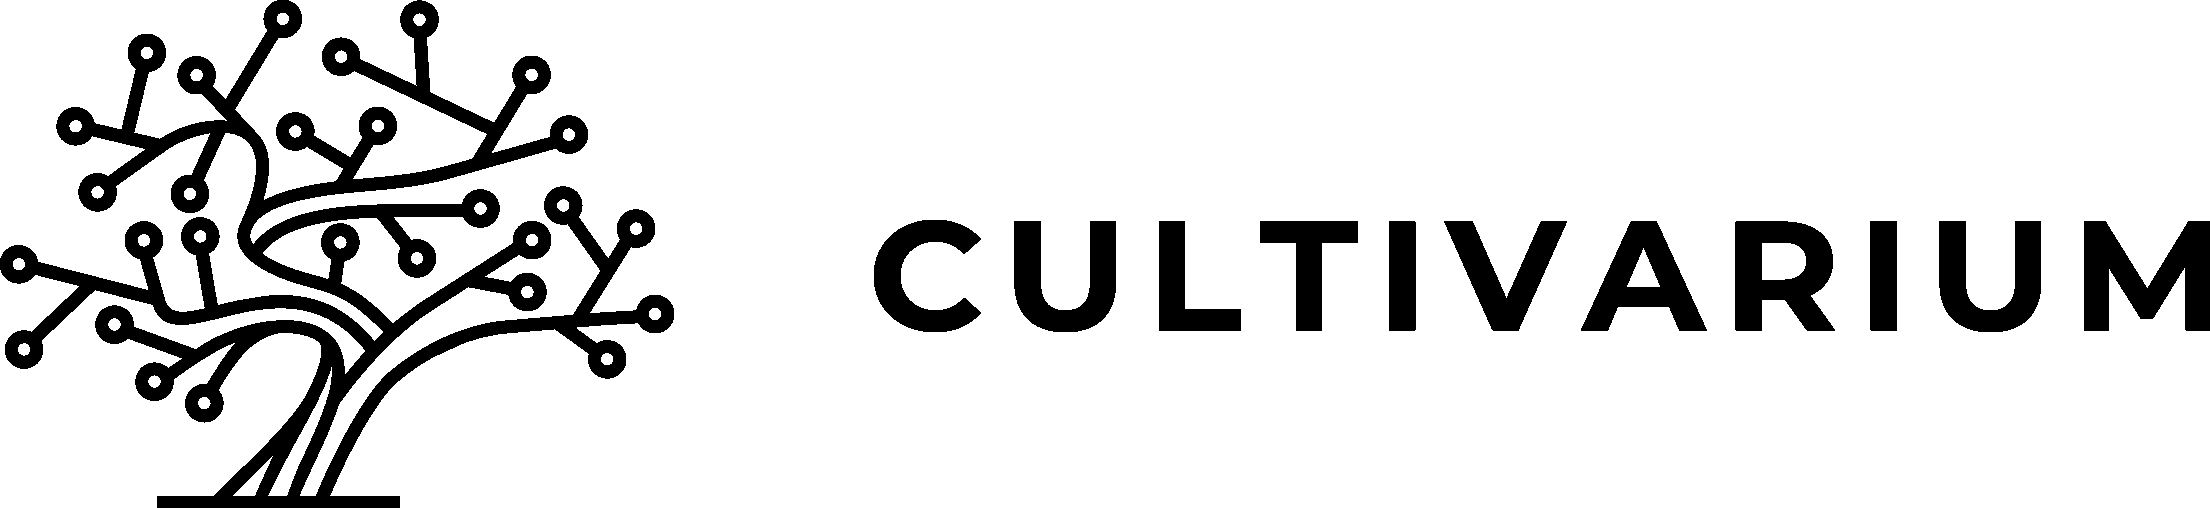 Cultivarium, USA logo